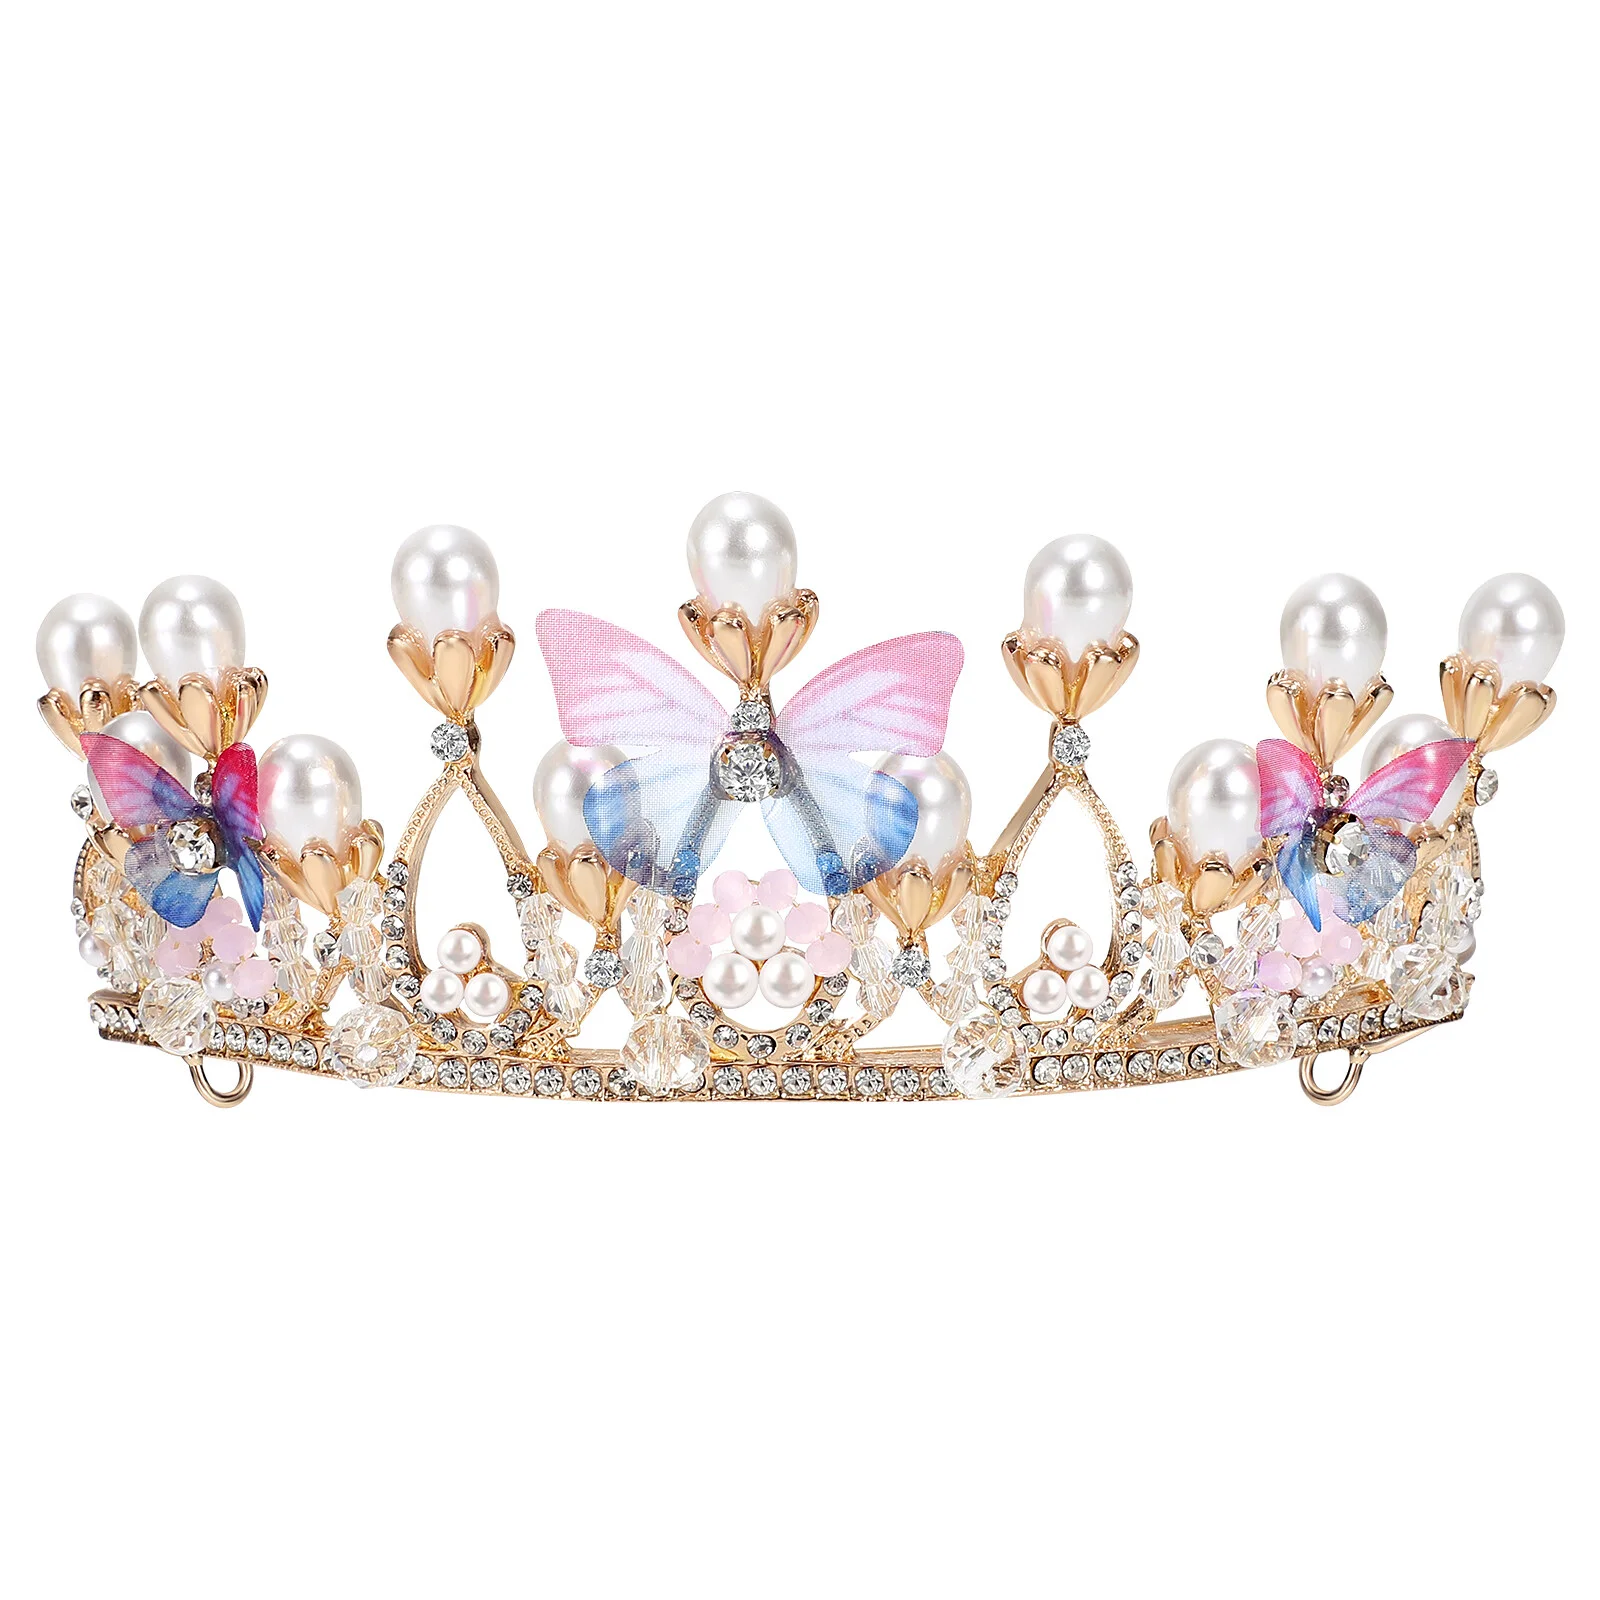 

Головной убор с короной Lurrose, Хрустальная корона, головная повязка для детей, вечерние на день рождения для девочек, подарок на фестиваль